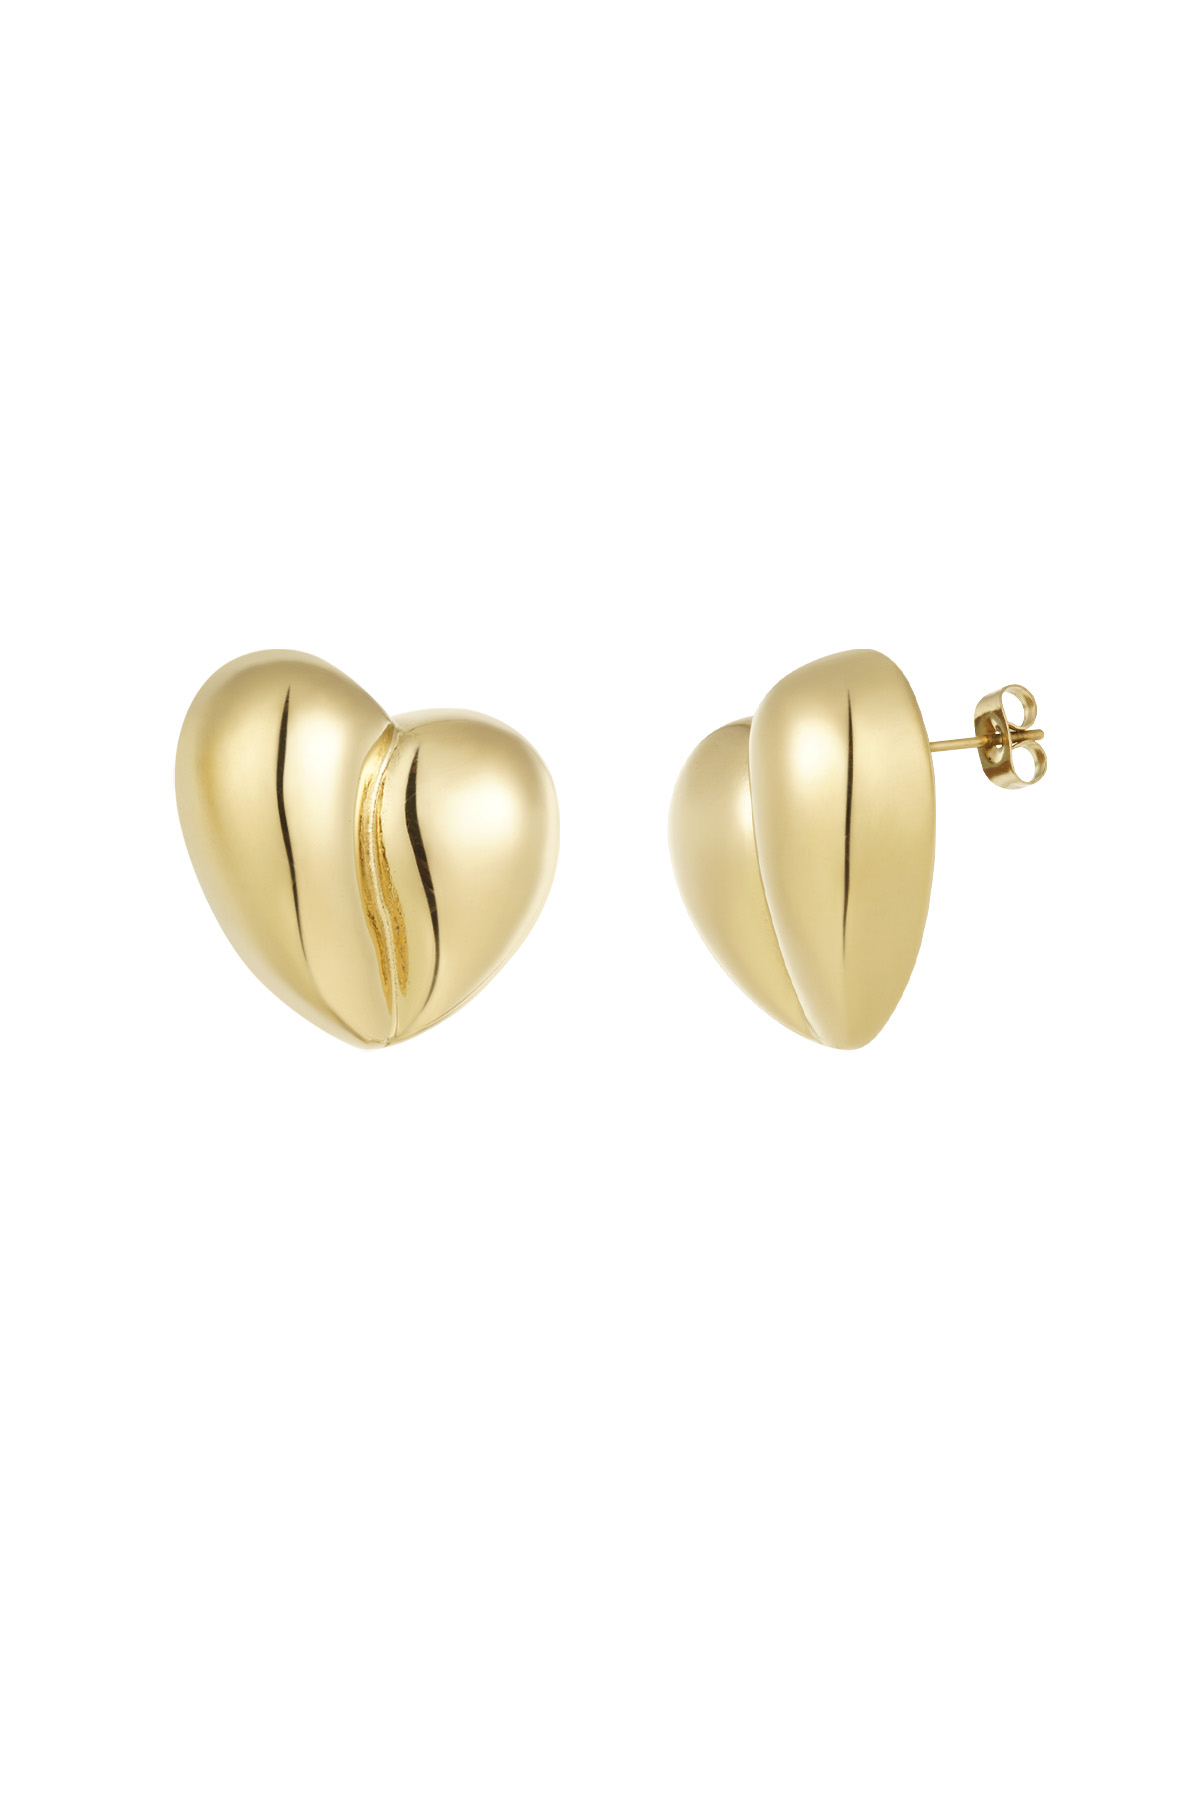 Oorbellen heart shape - goud h5 